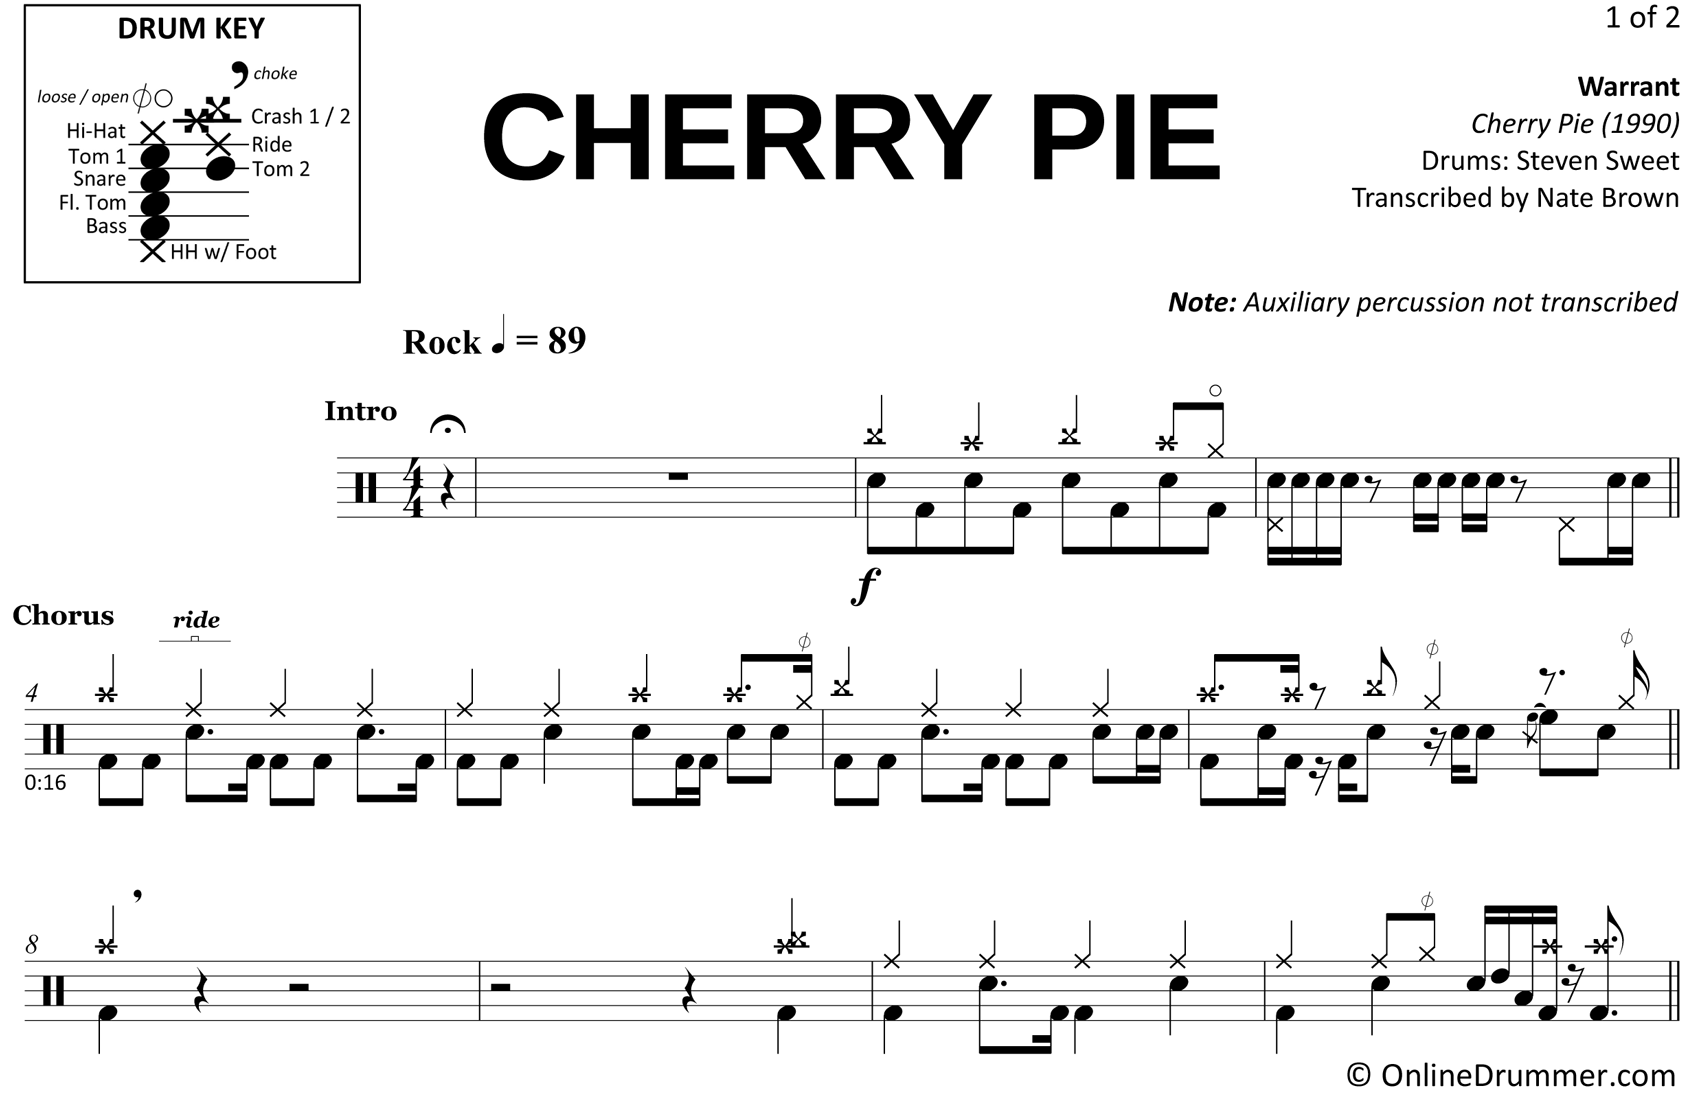 Cherry Pie - Warrant - Drum Sheet Music